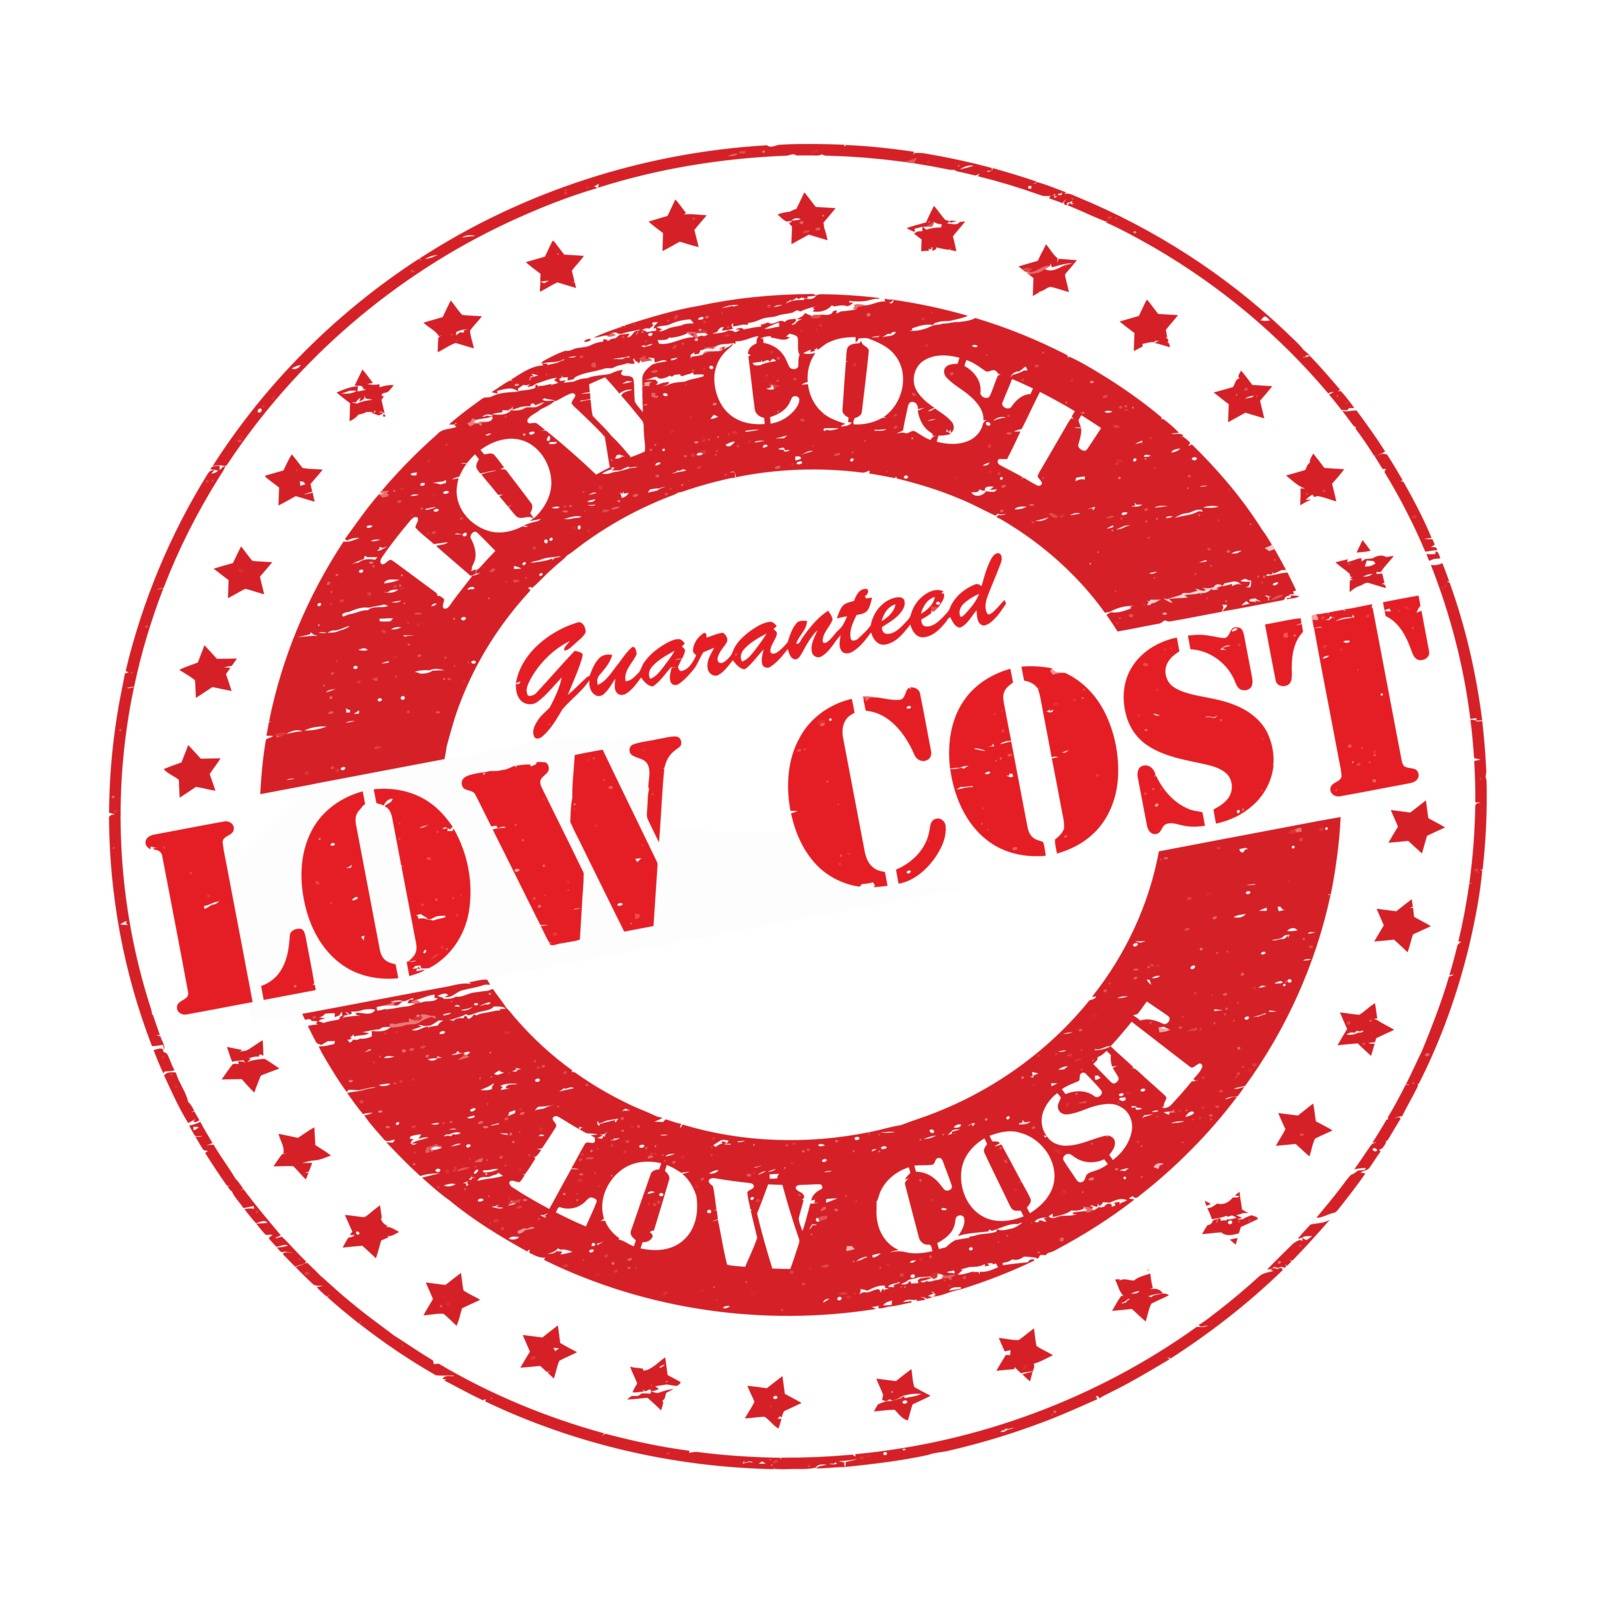 Low cost by carmenbobo